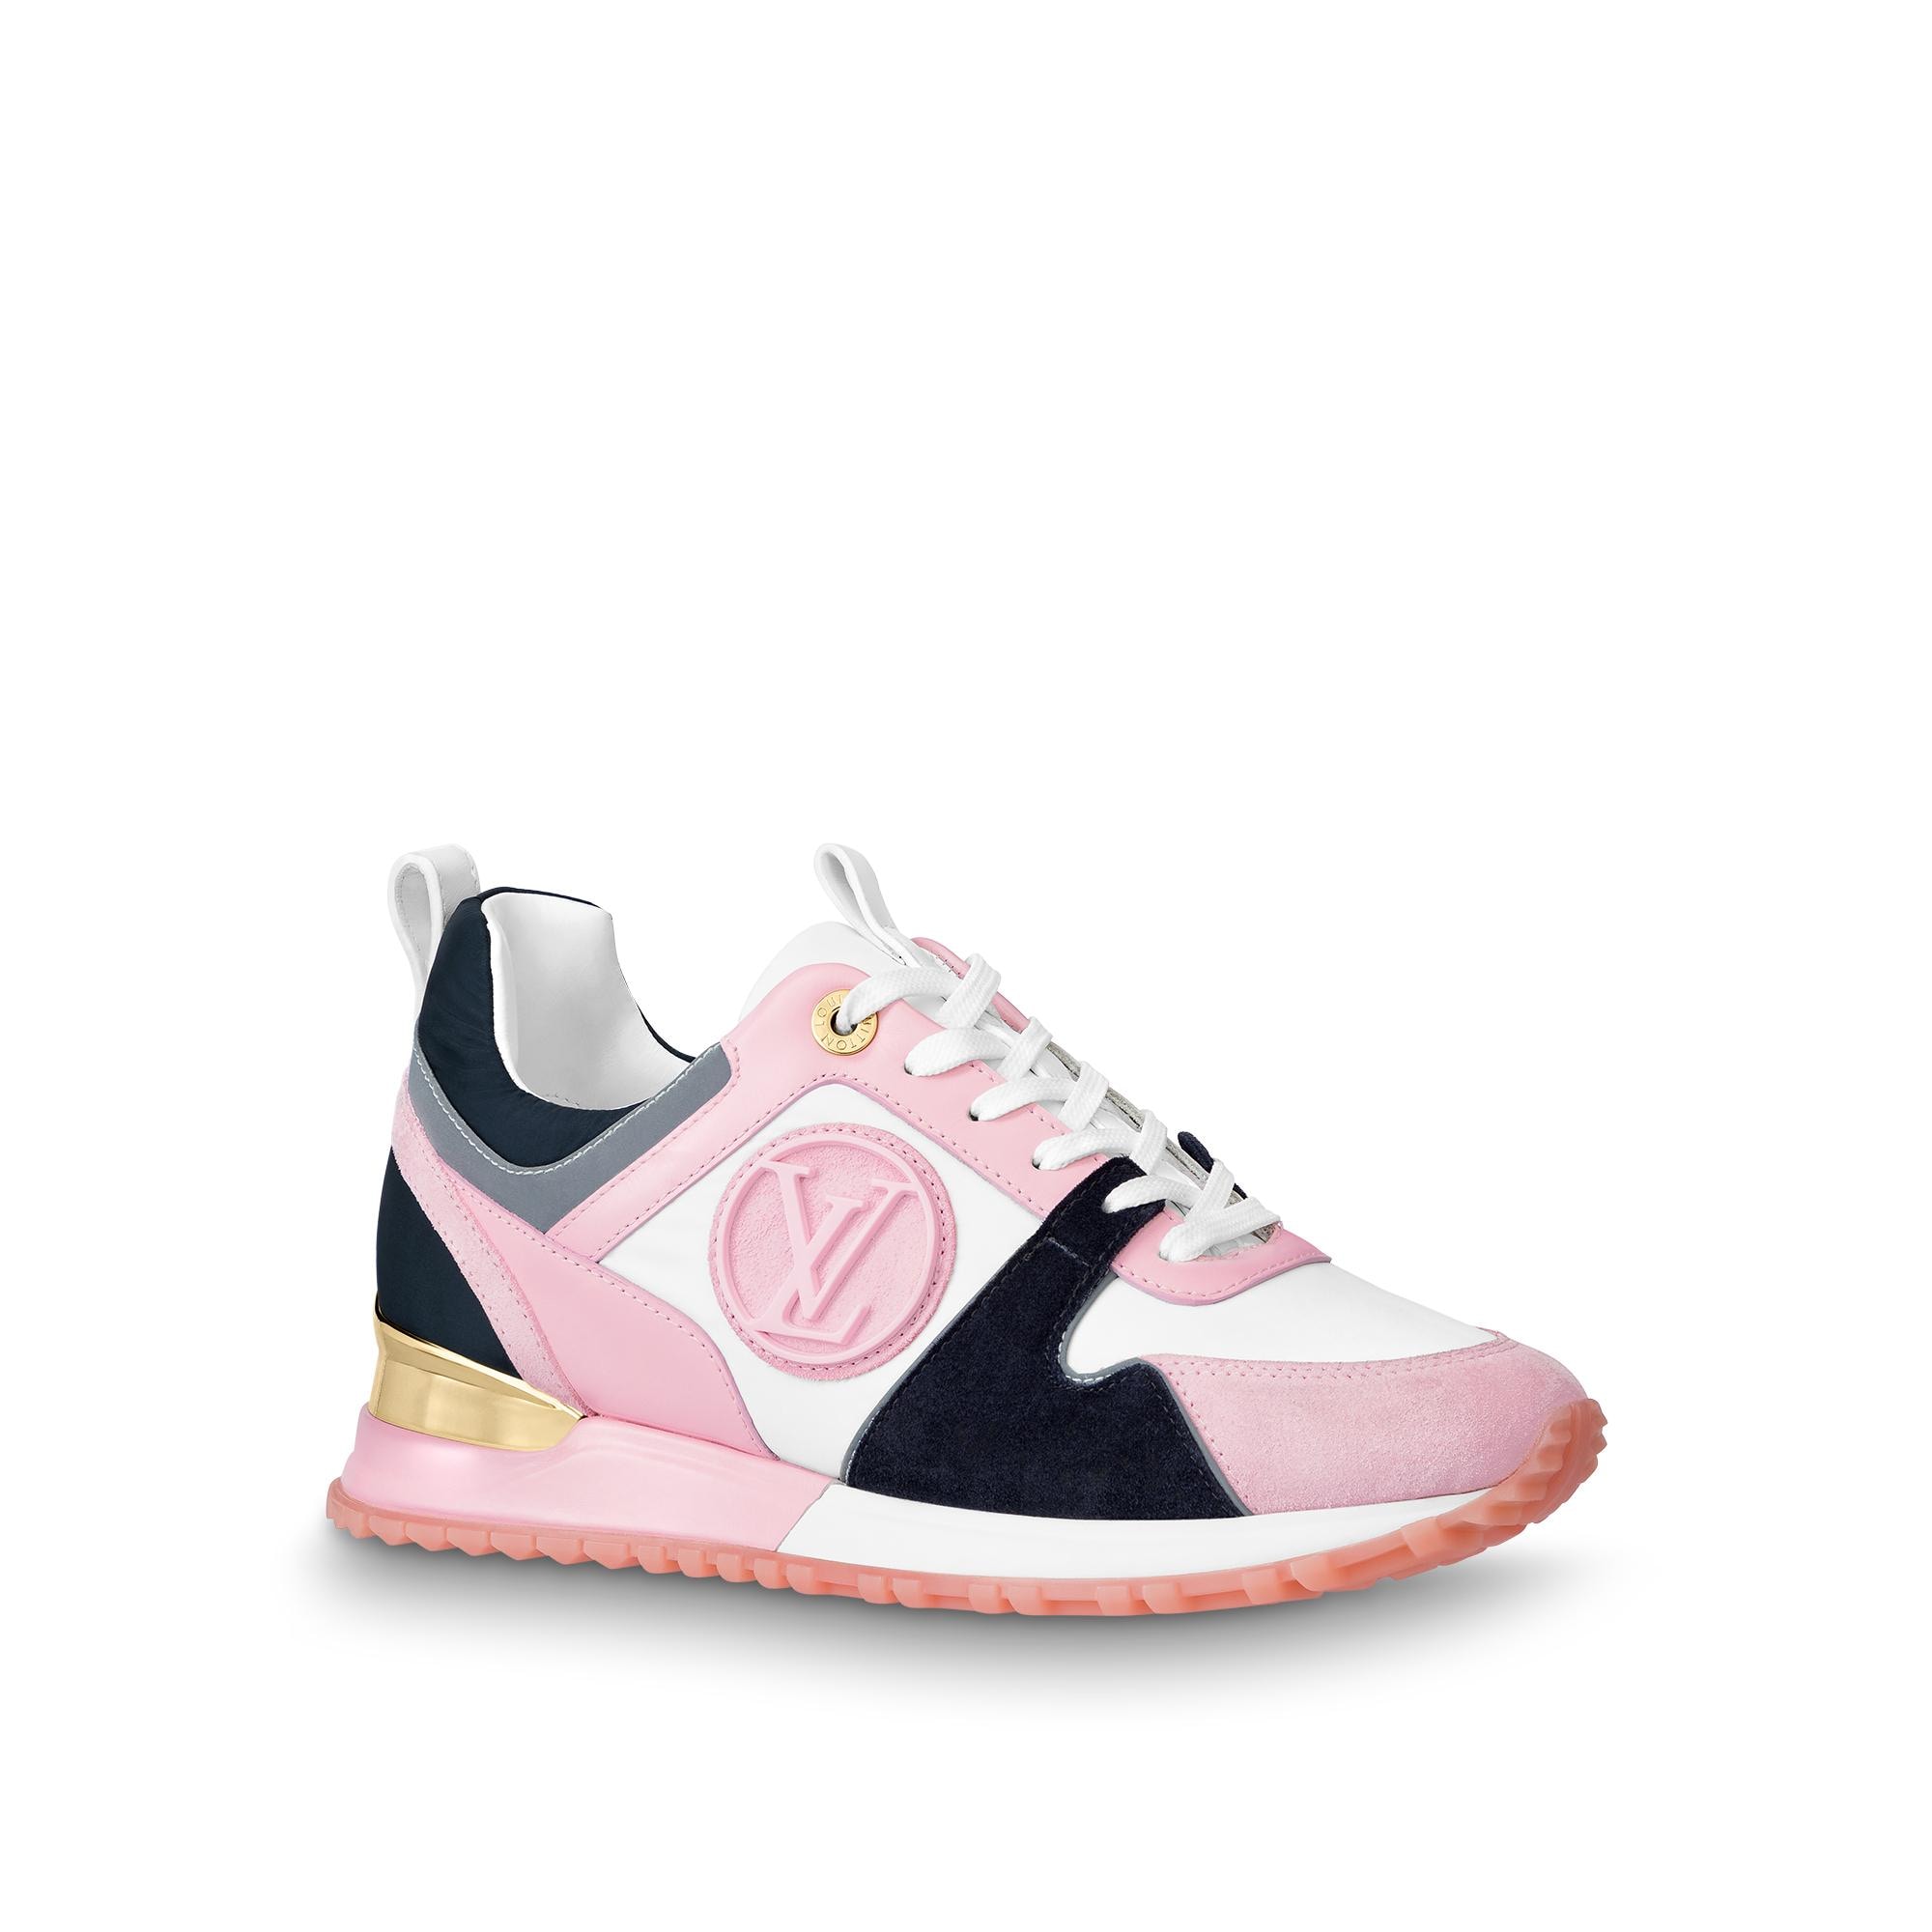 Louis Vuitton Run Away Sneaker in Rose - Shoes 1A94CF - $133.90 